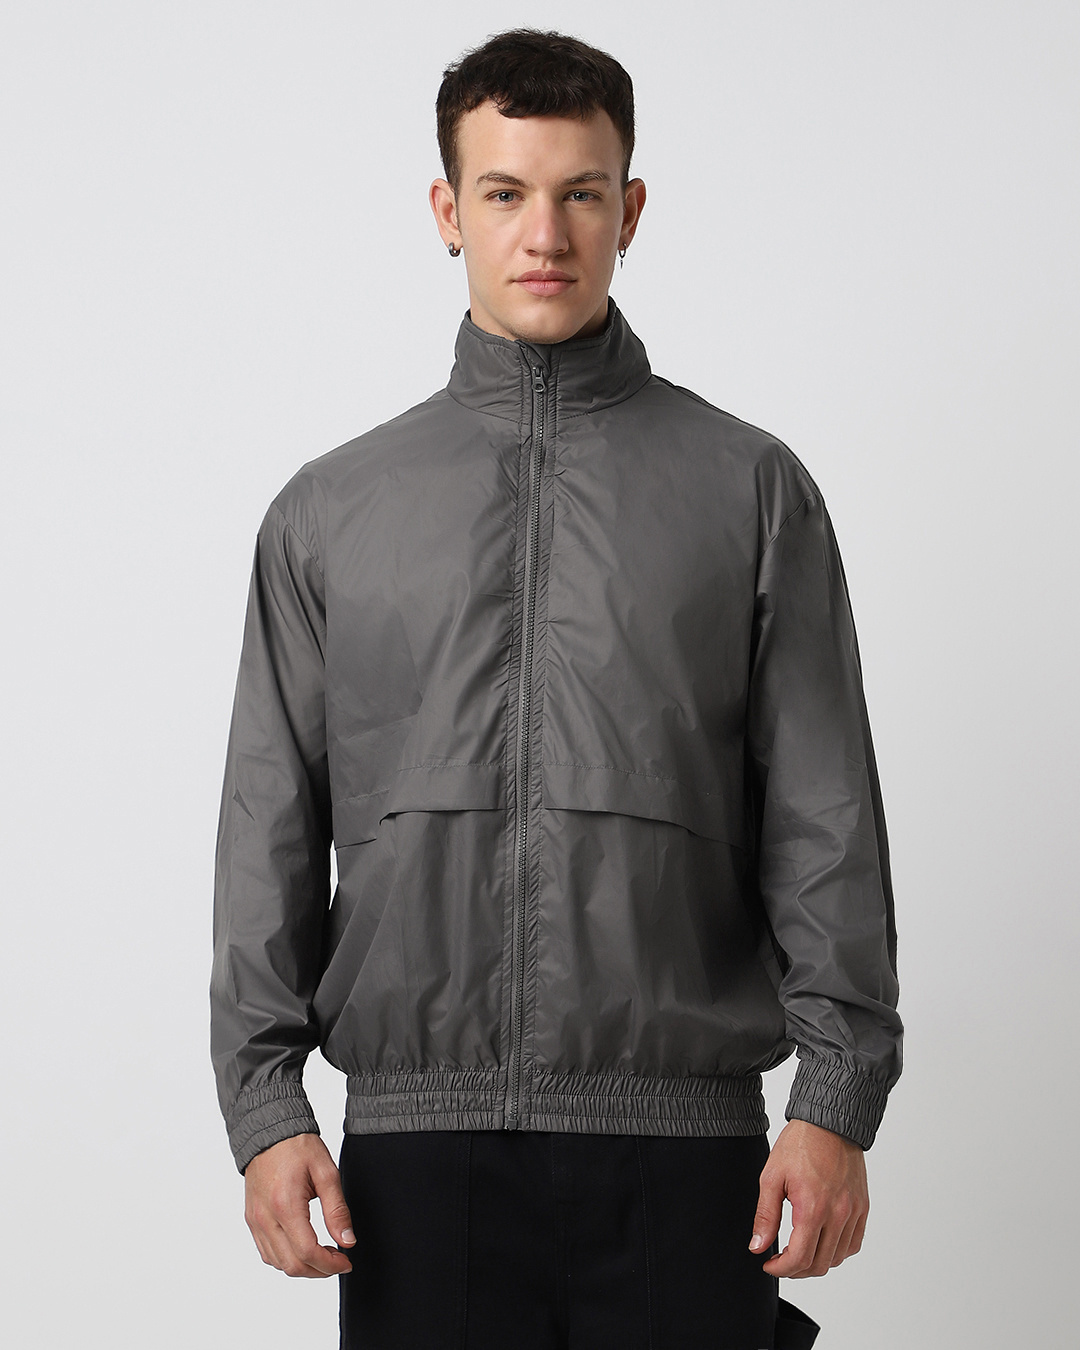 Buy Men's Grey Oversized Windcheater Jacket Online at Bewakoof